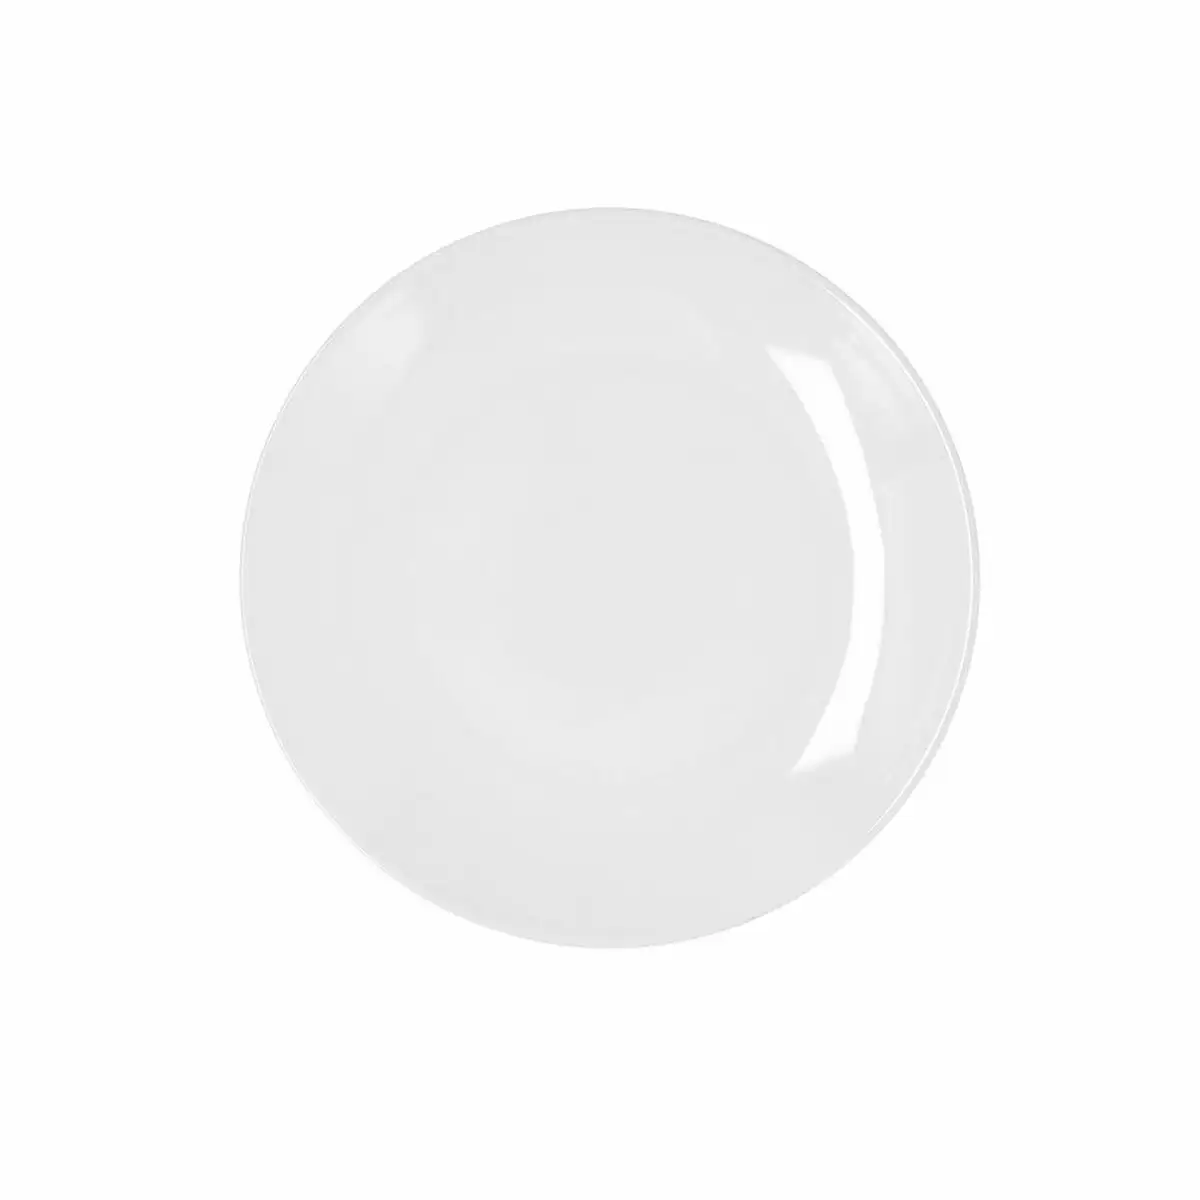 Assiette plate bidasoa glacial coupe ceramique blanc 21 cm pack 6x _9929. DIAYTAR SENEGAL - Un Monde de Possibilités à Portée de Clic. Parcourez notre site web pour découvrir des sélections infinies, de l'épicerie aux bijoux, et vivez une expérience d'achat sans pareil.